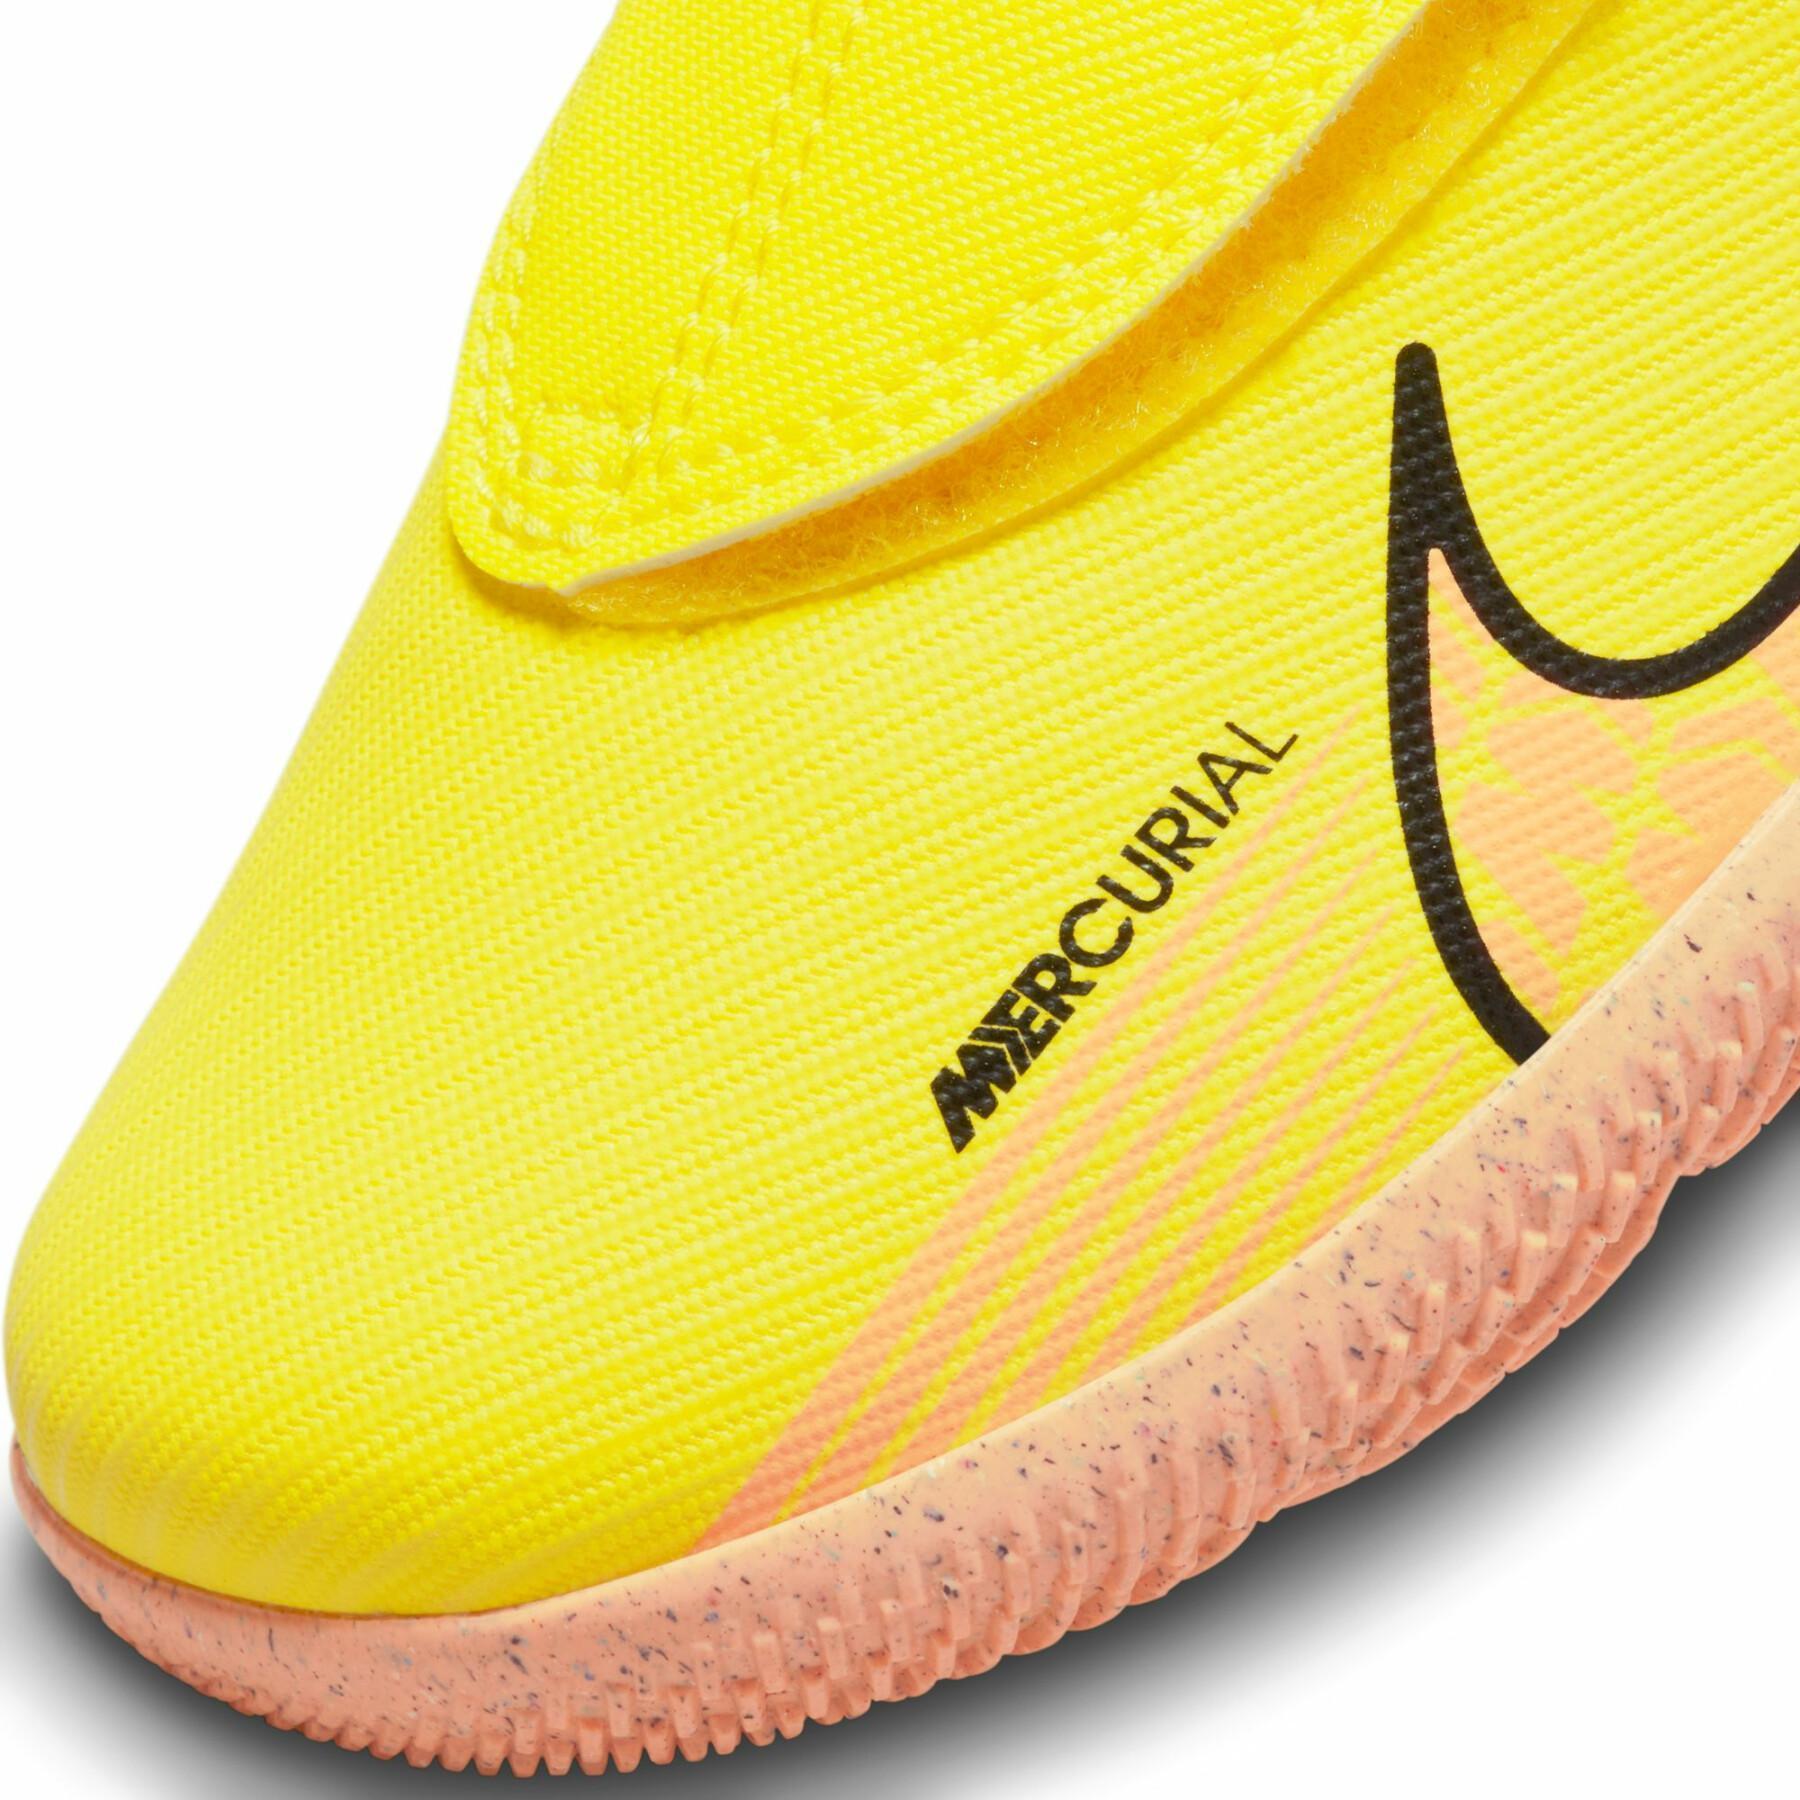 Voetbalschoenen voor kinderen Nike Mercurial Vapor 15 Club IC - Lucent Pack